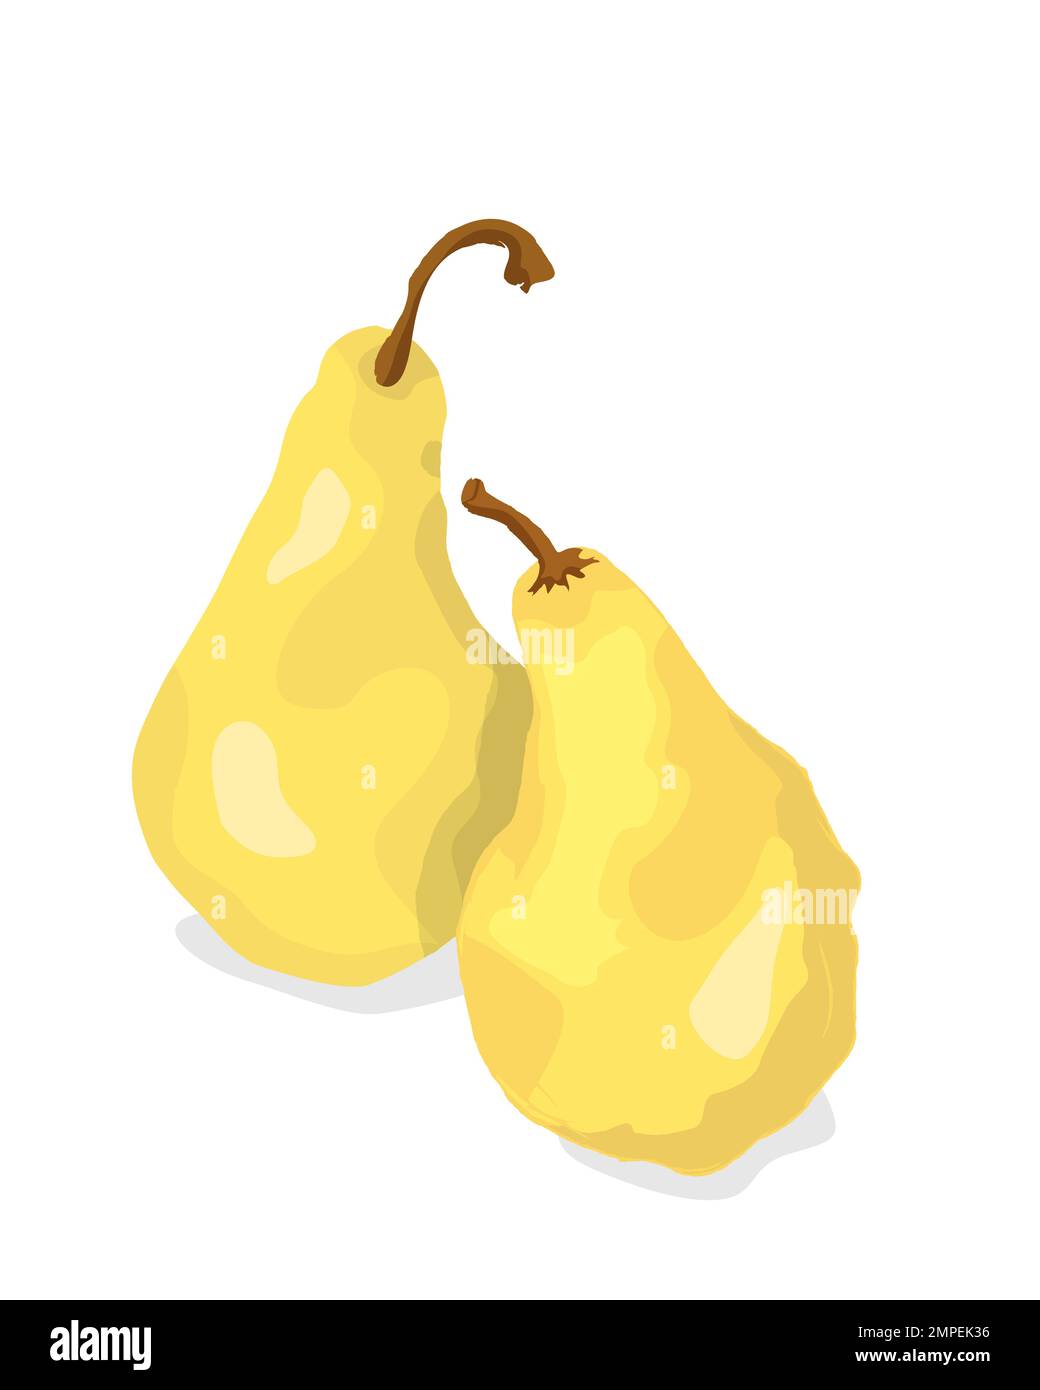 https://c8.alamy.com/comp/2MPEK36/two-golden-pears-over-white-vector-illustrtion-2MPEK36.jpg